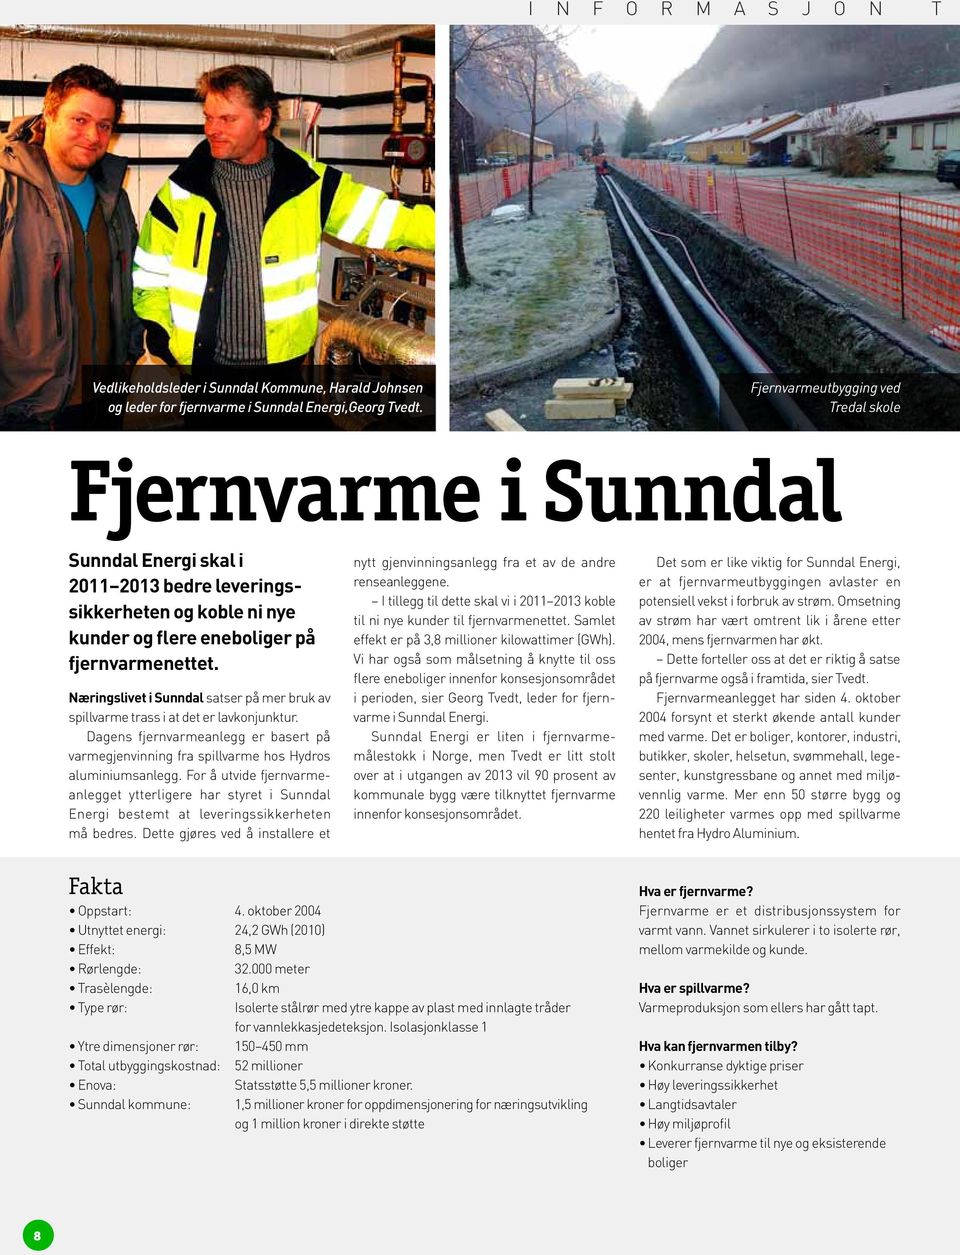 Næringslivet i Sunndal satser på mer bruk av spillvarme trass i at det er lavkonjunktur. Dagens fjernvarmeanlegg er basert på varmegjenvinning fra spillvarme hos Hydros aluminiumsanlegg.